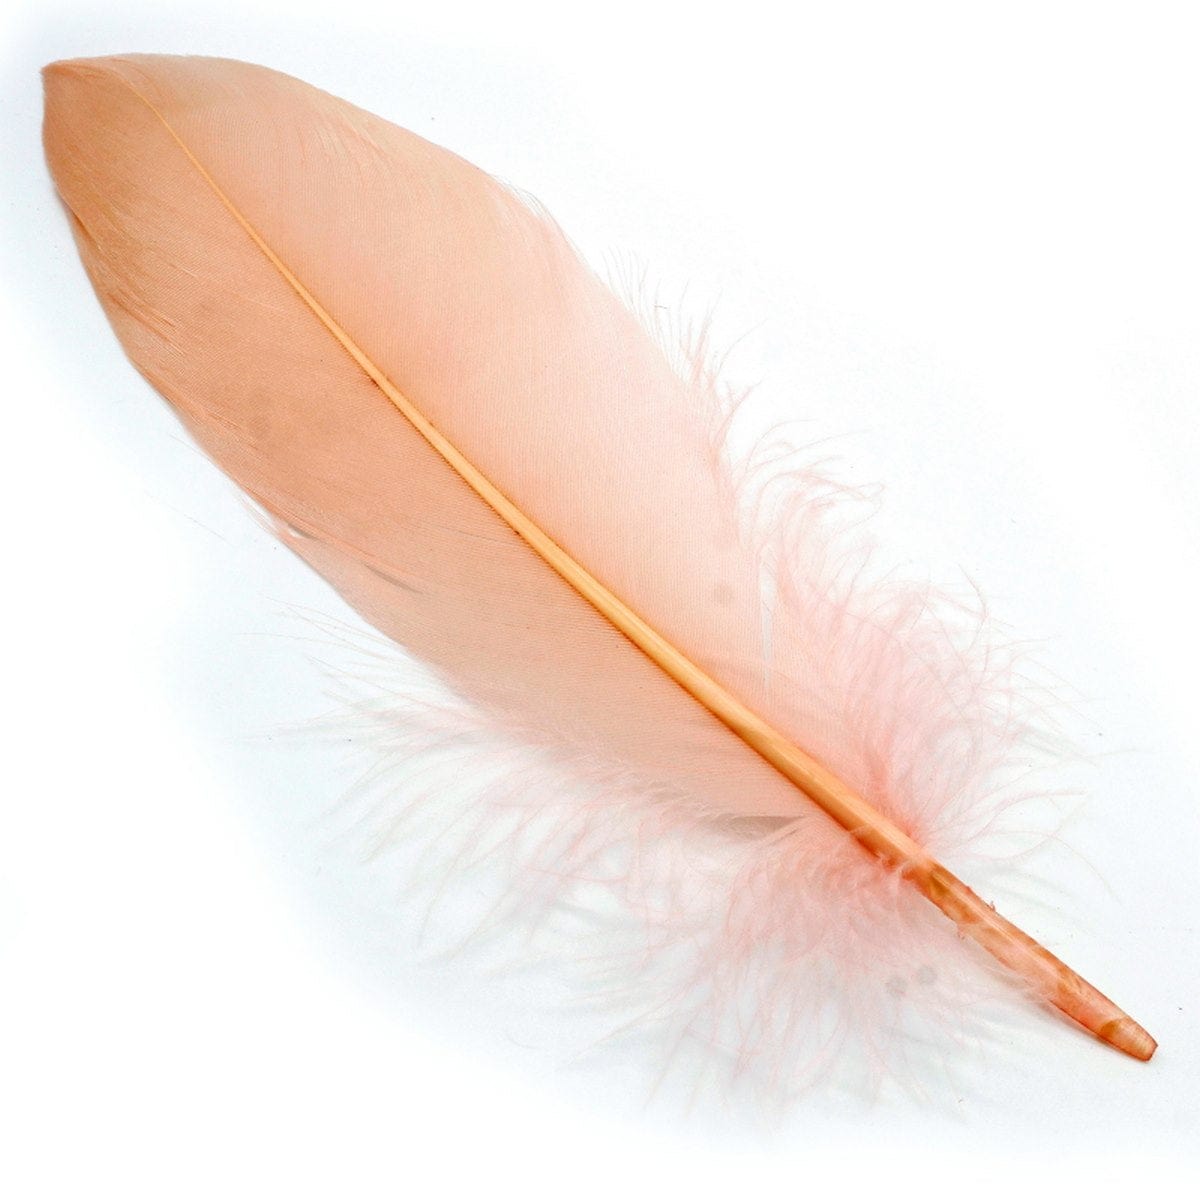 jags-mumbai Feather Feather Artificial Medium Colour 10pcs CFM-A